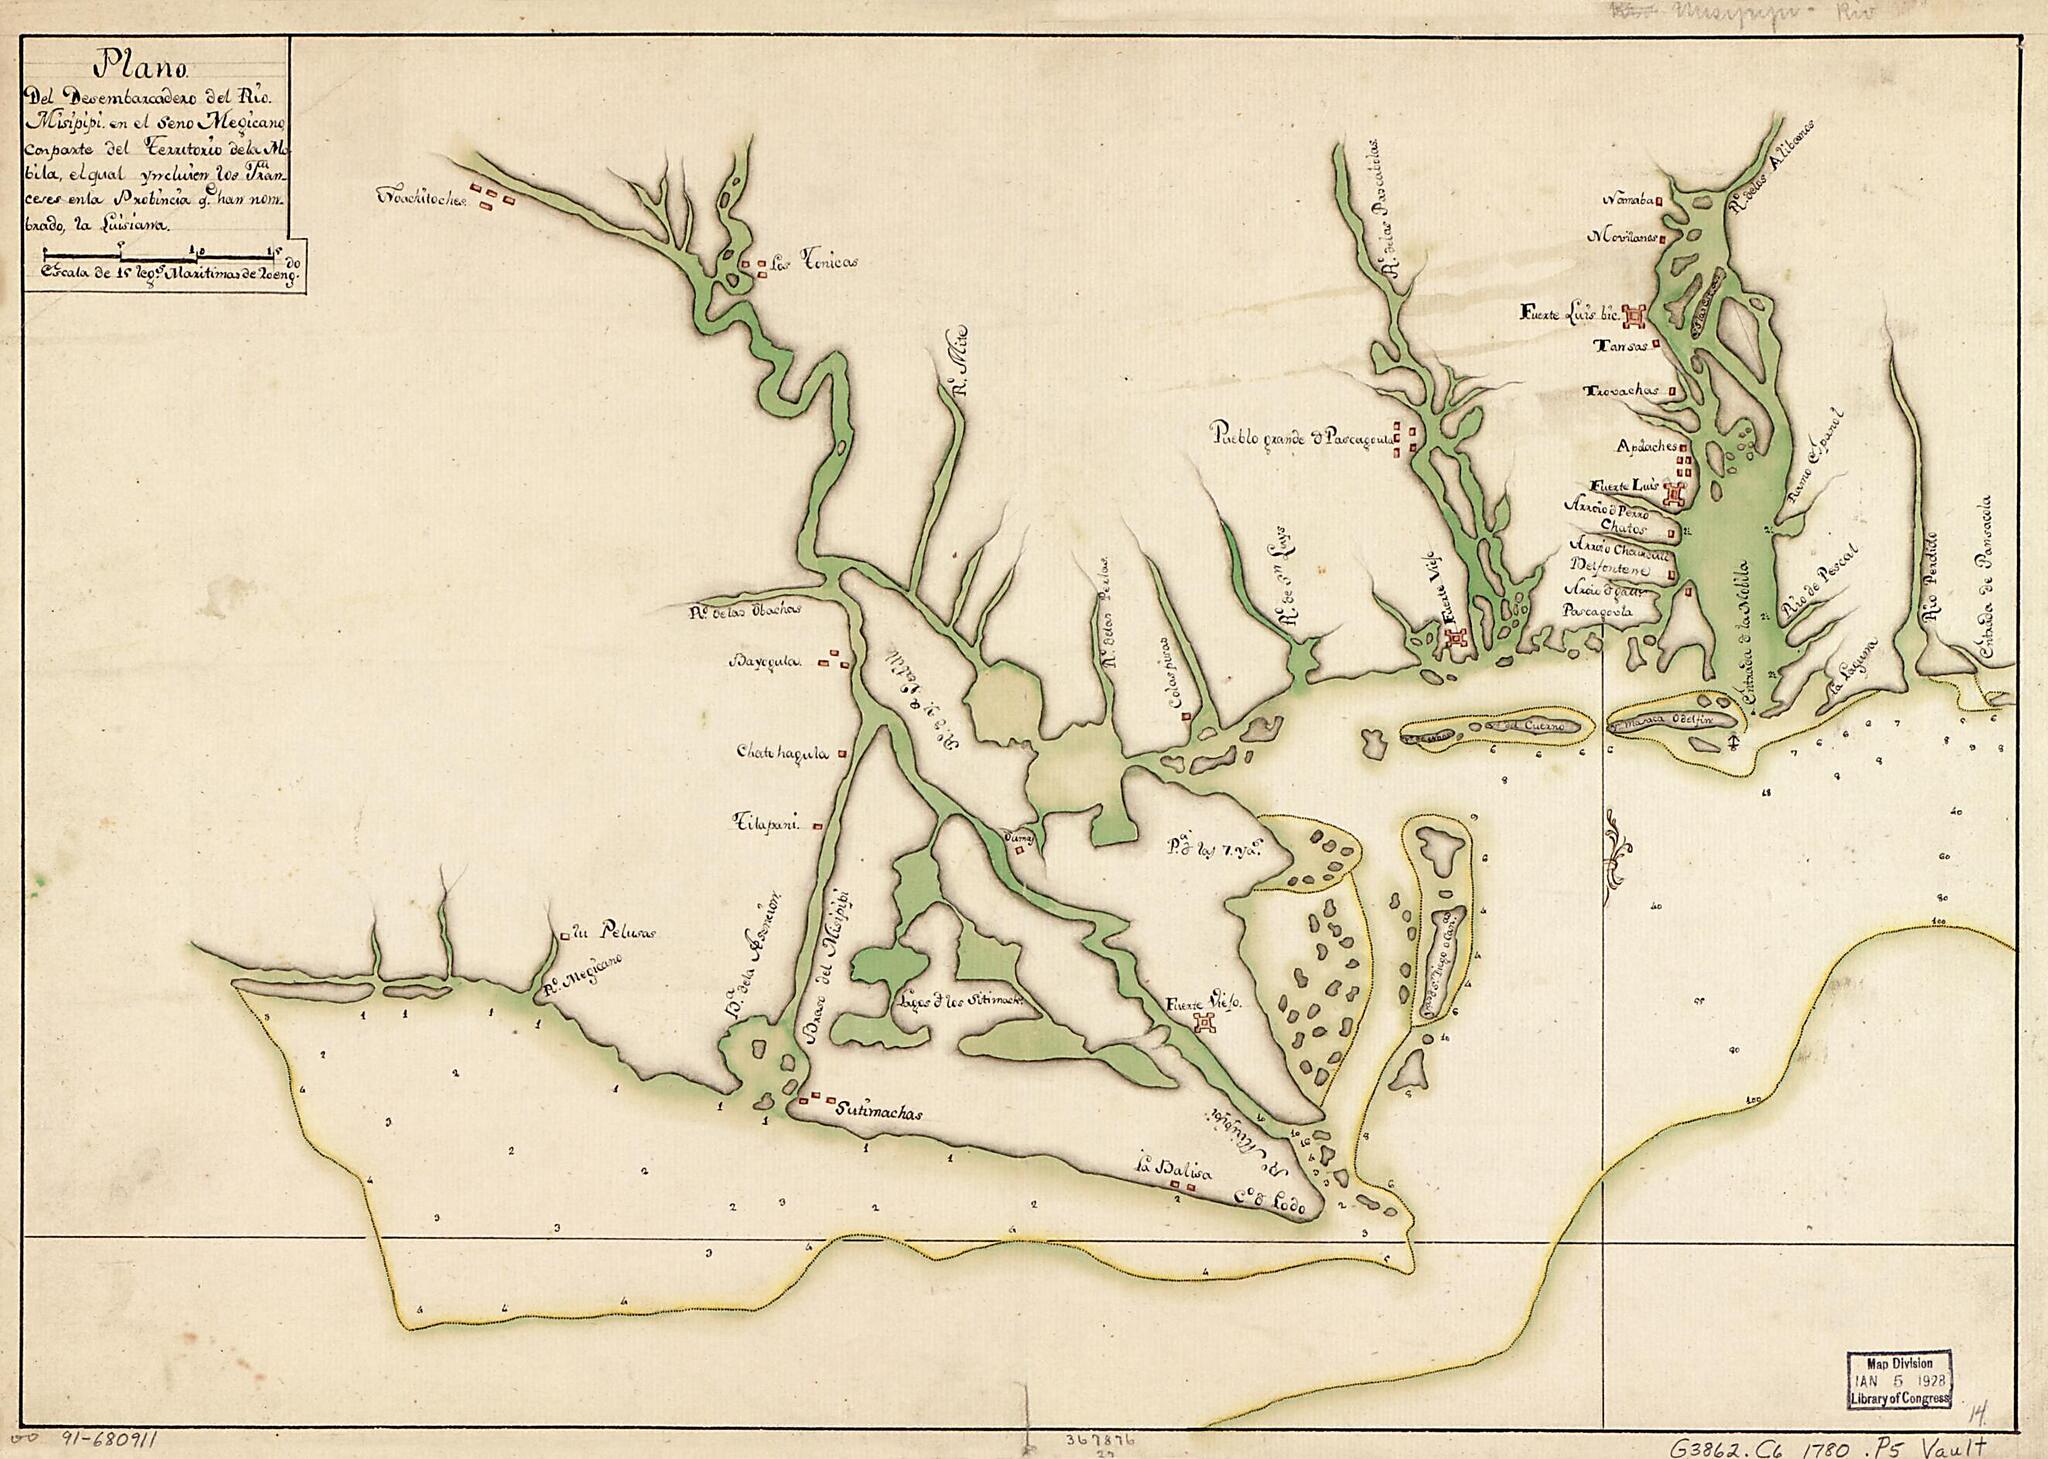 This old map of Plano Del Desembarcadero Del Río Misipipi En El Seno Megicano Con Parte Del Territorio De La Mobila, El Qual Yncluien Los Franceses En La Probincia Qe. Han Nombrado La Luisiana from 1780 was created by  in 1780